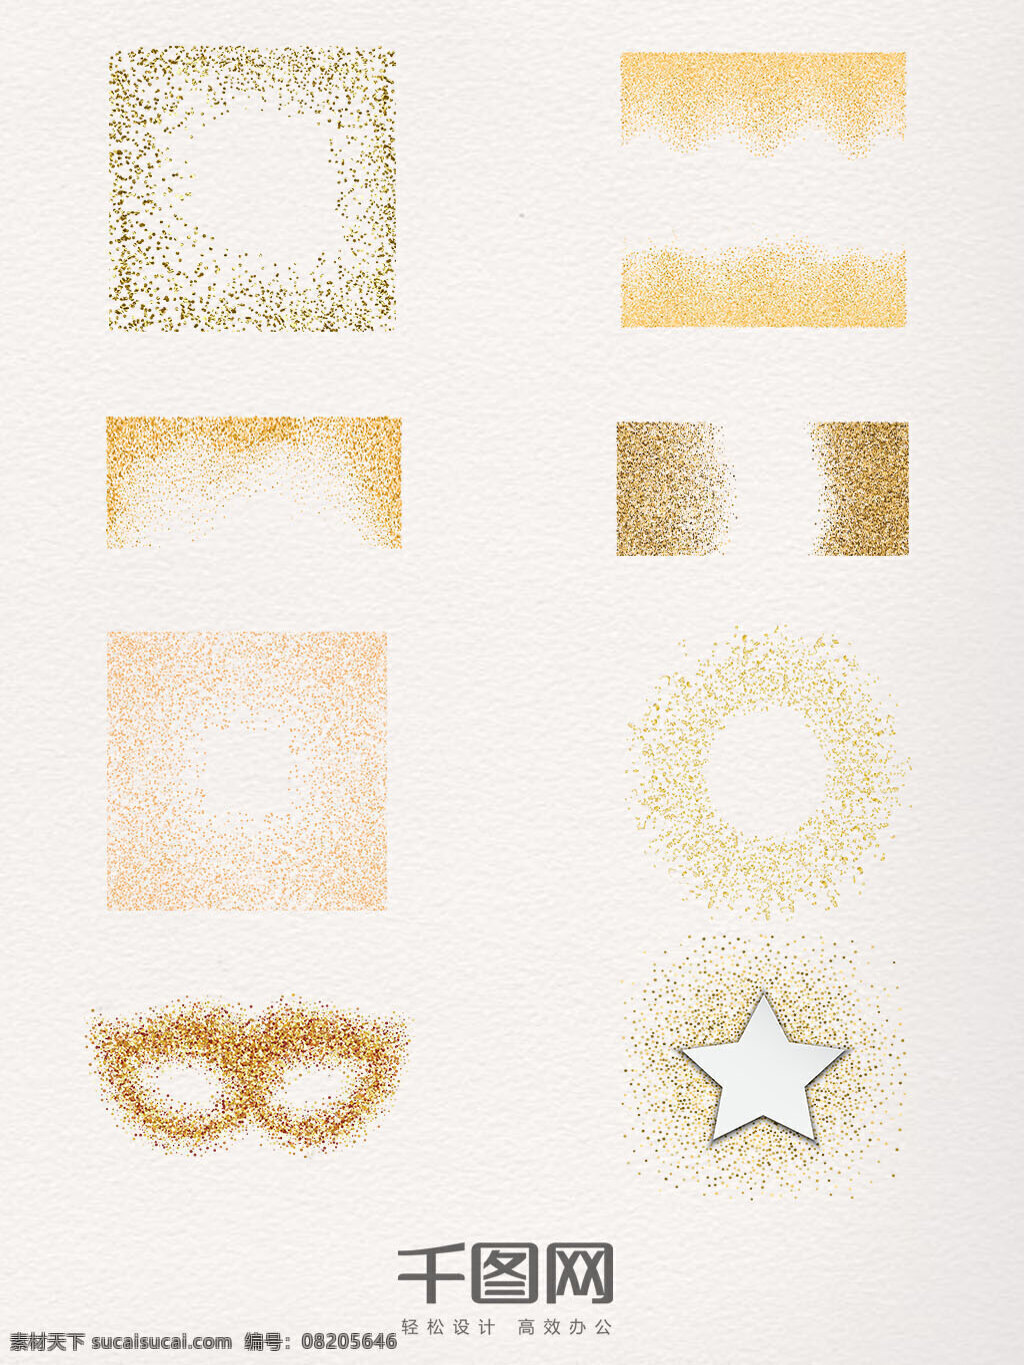 创意 金色 碎片 图案 元素 金色碎片 镂空 圆形 扩散 眼镜 星星 造型